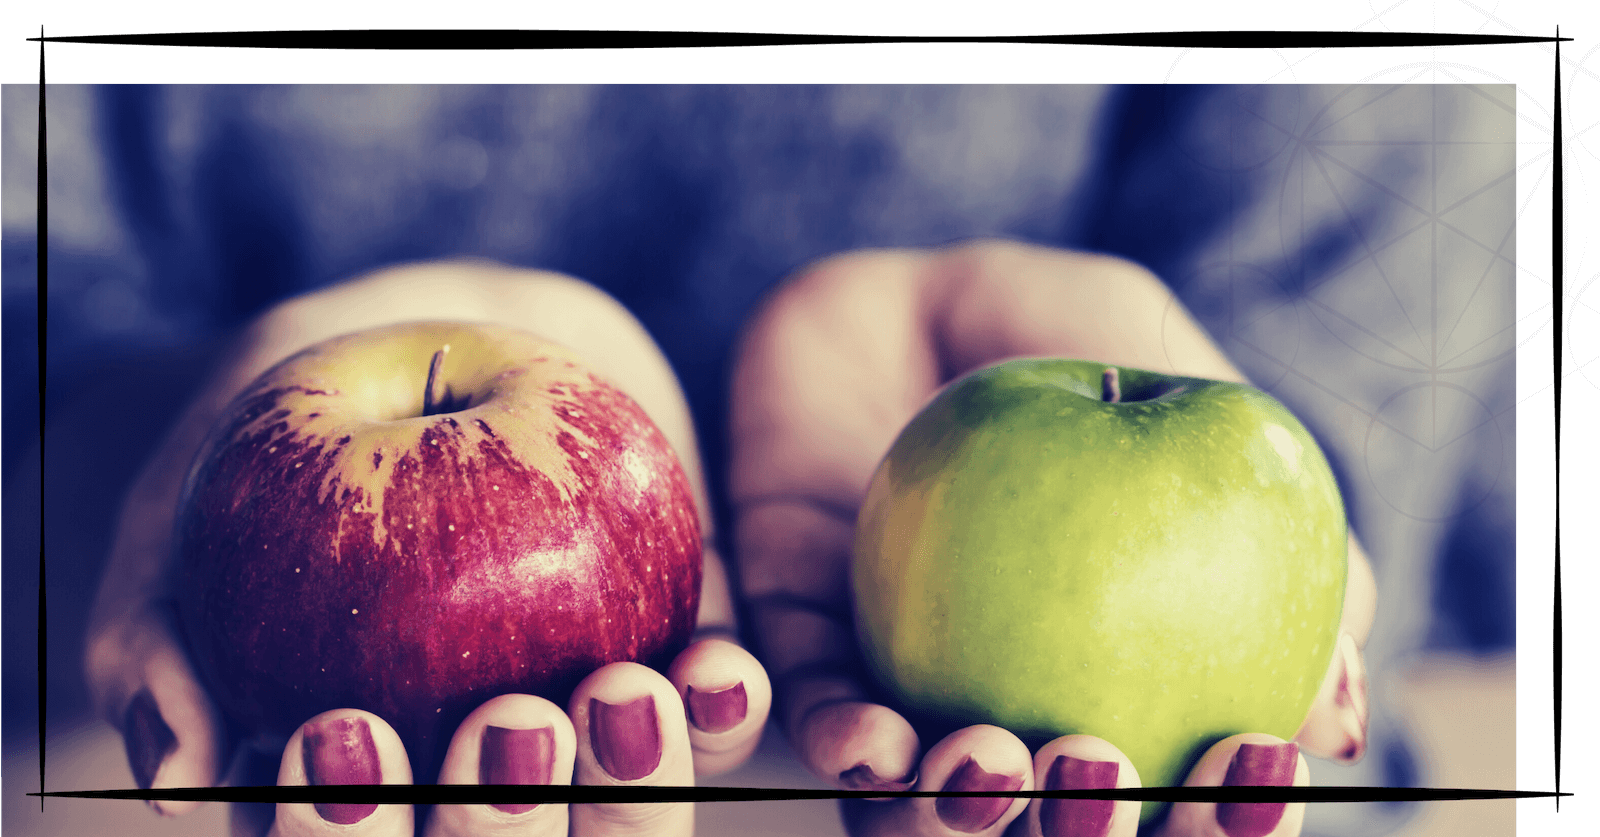 Bild zeigt zwei Hände mit rot lackierten Nägeln. In einer Hand einen roten Apfel, in der anderen Hand einen gelben Apfel.